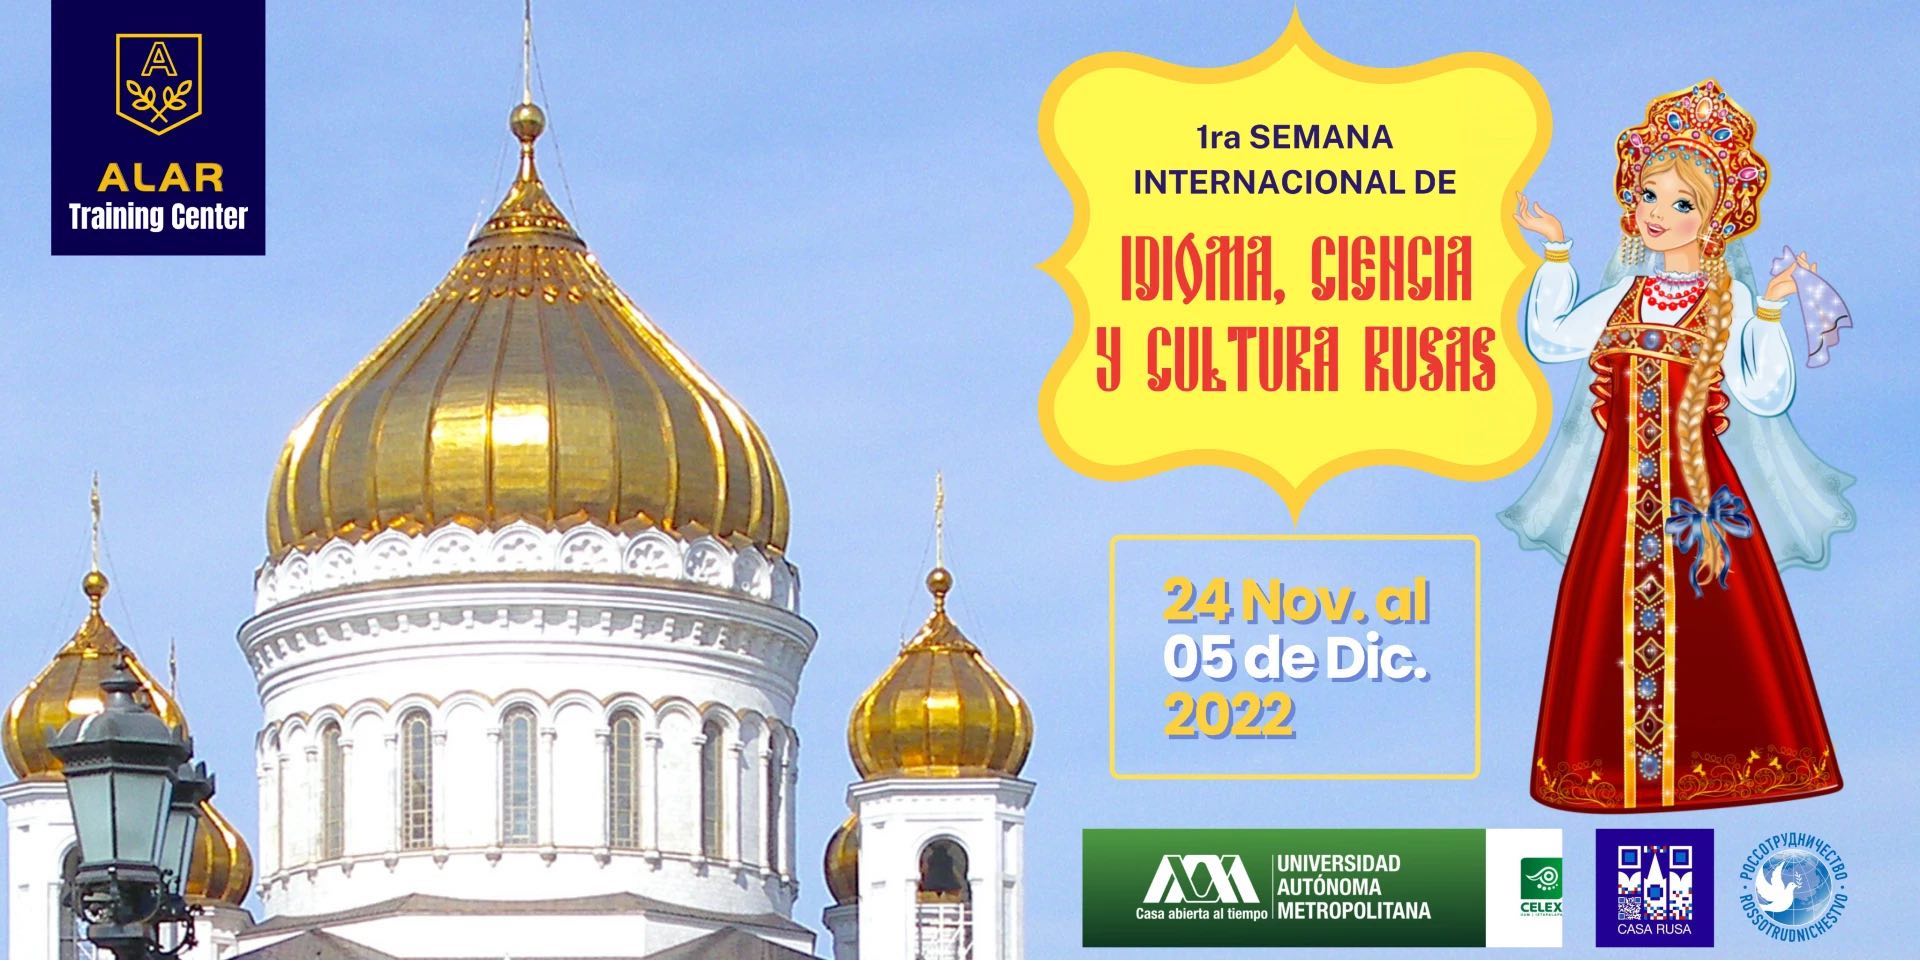 Excelente noticia: Semana internacional de idioma, cultura y ciencia rusas